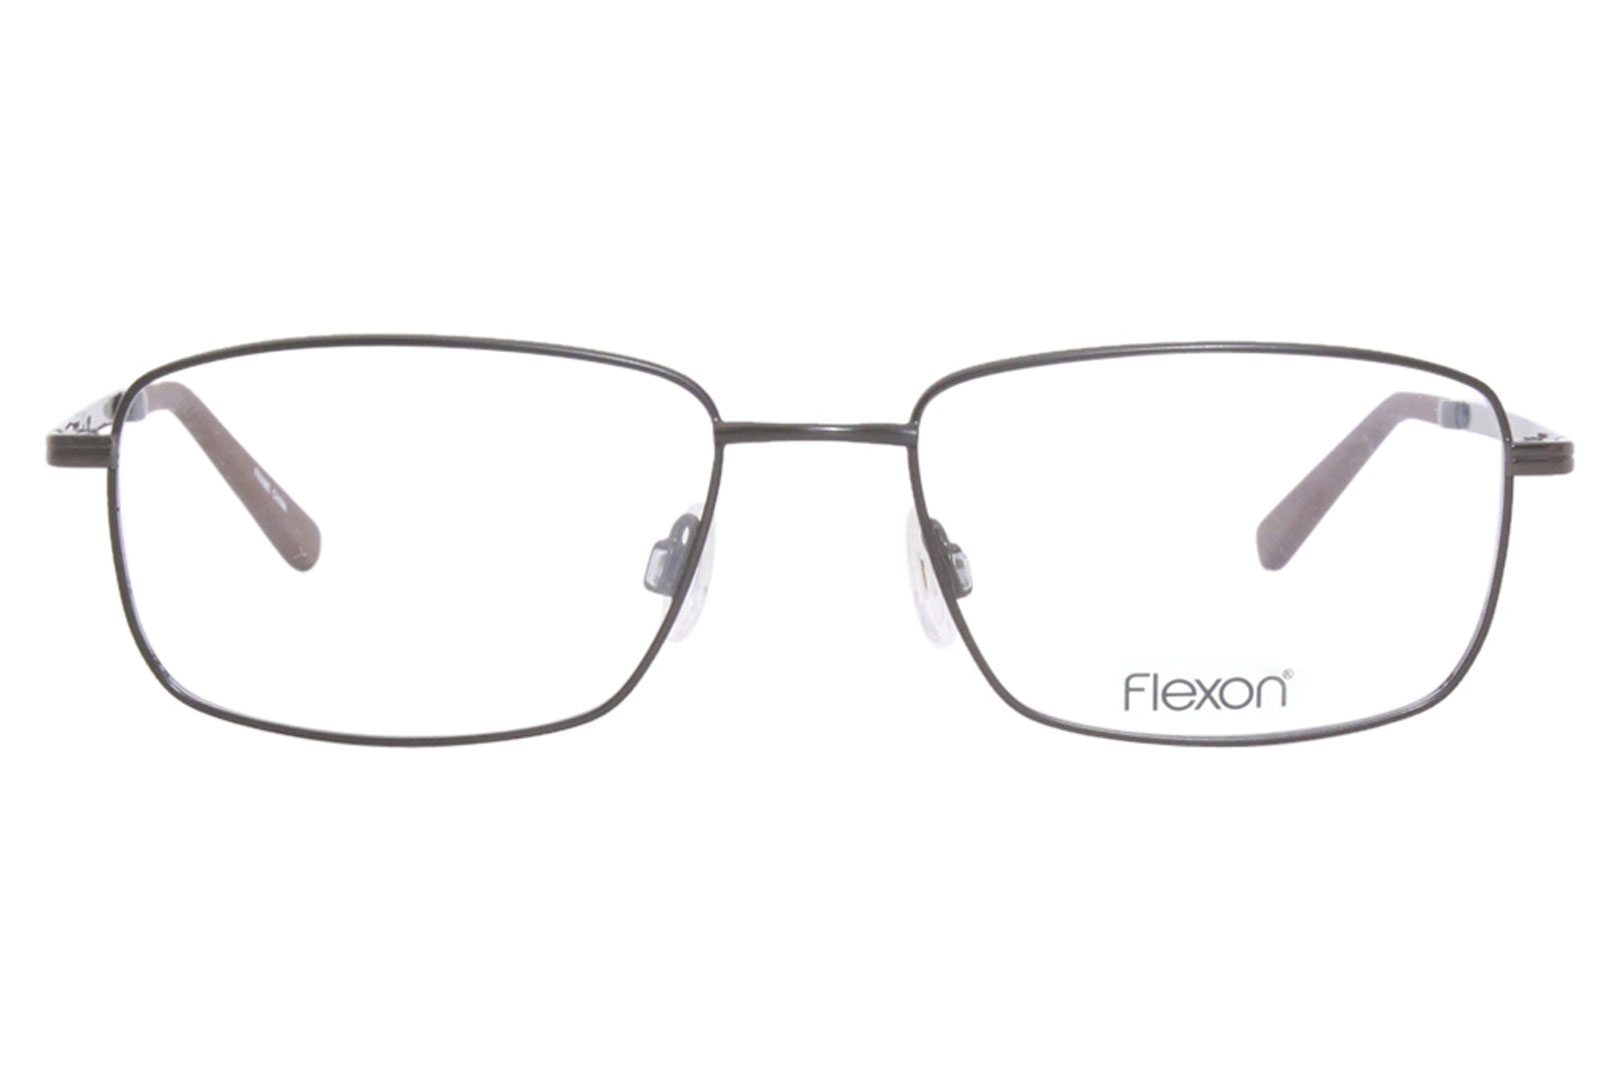 Flexon Men's Eyeglasses Nathaniel 600 210 Dark Brown 54-17-140mm ...